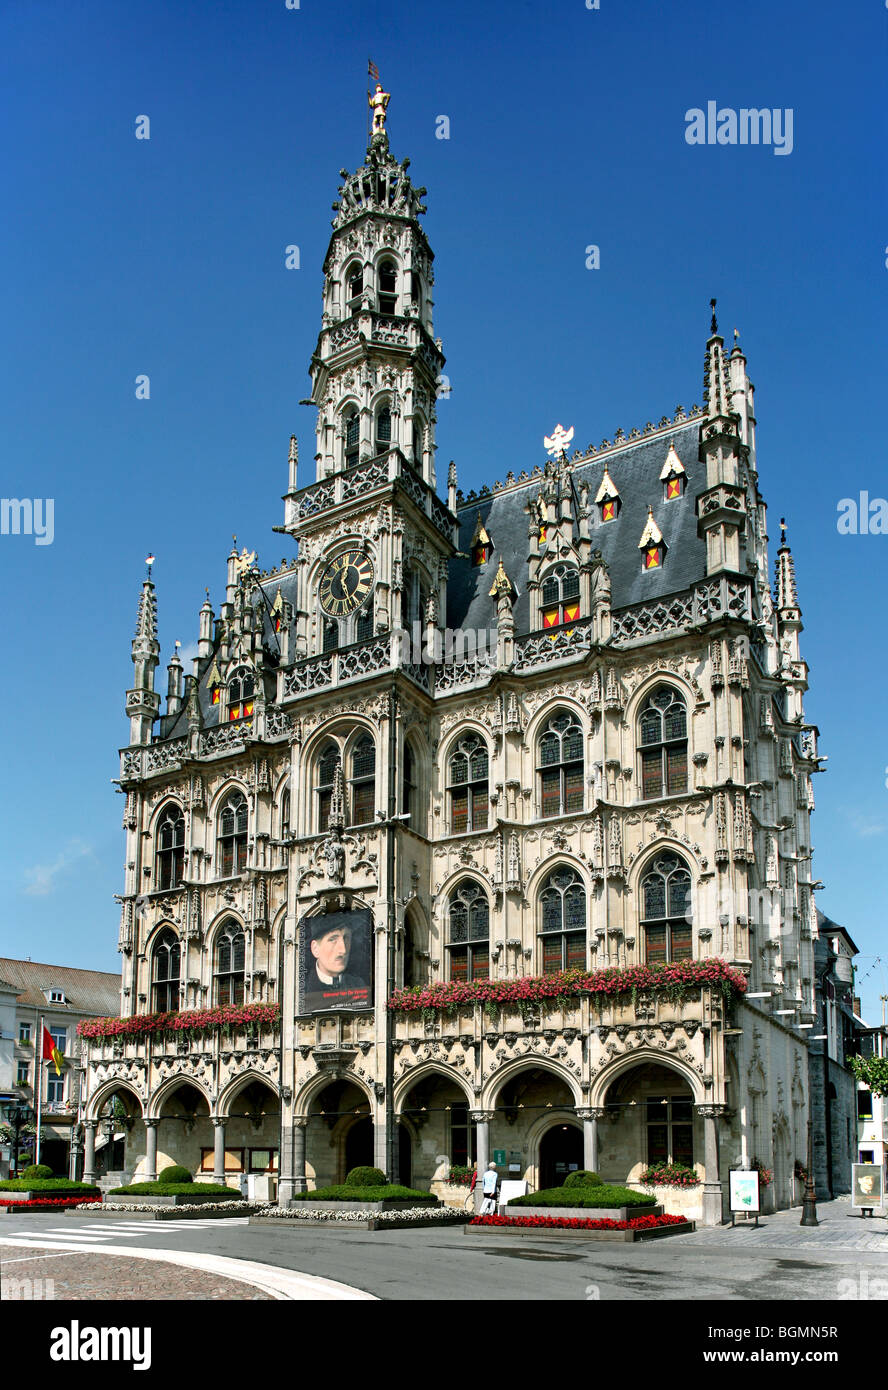 The Oudenaarde Town hall, Belgium Stock Photo